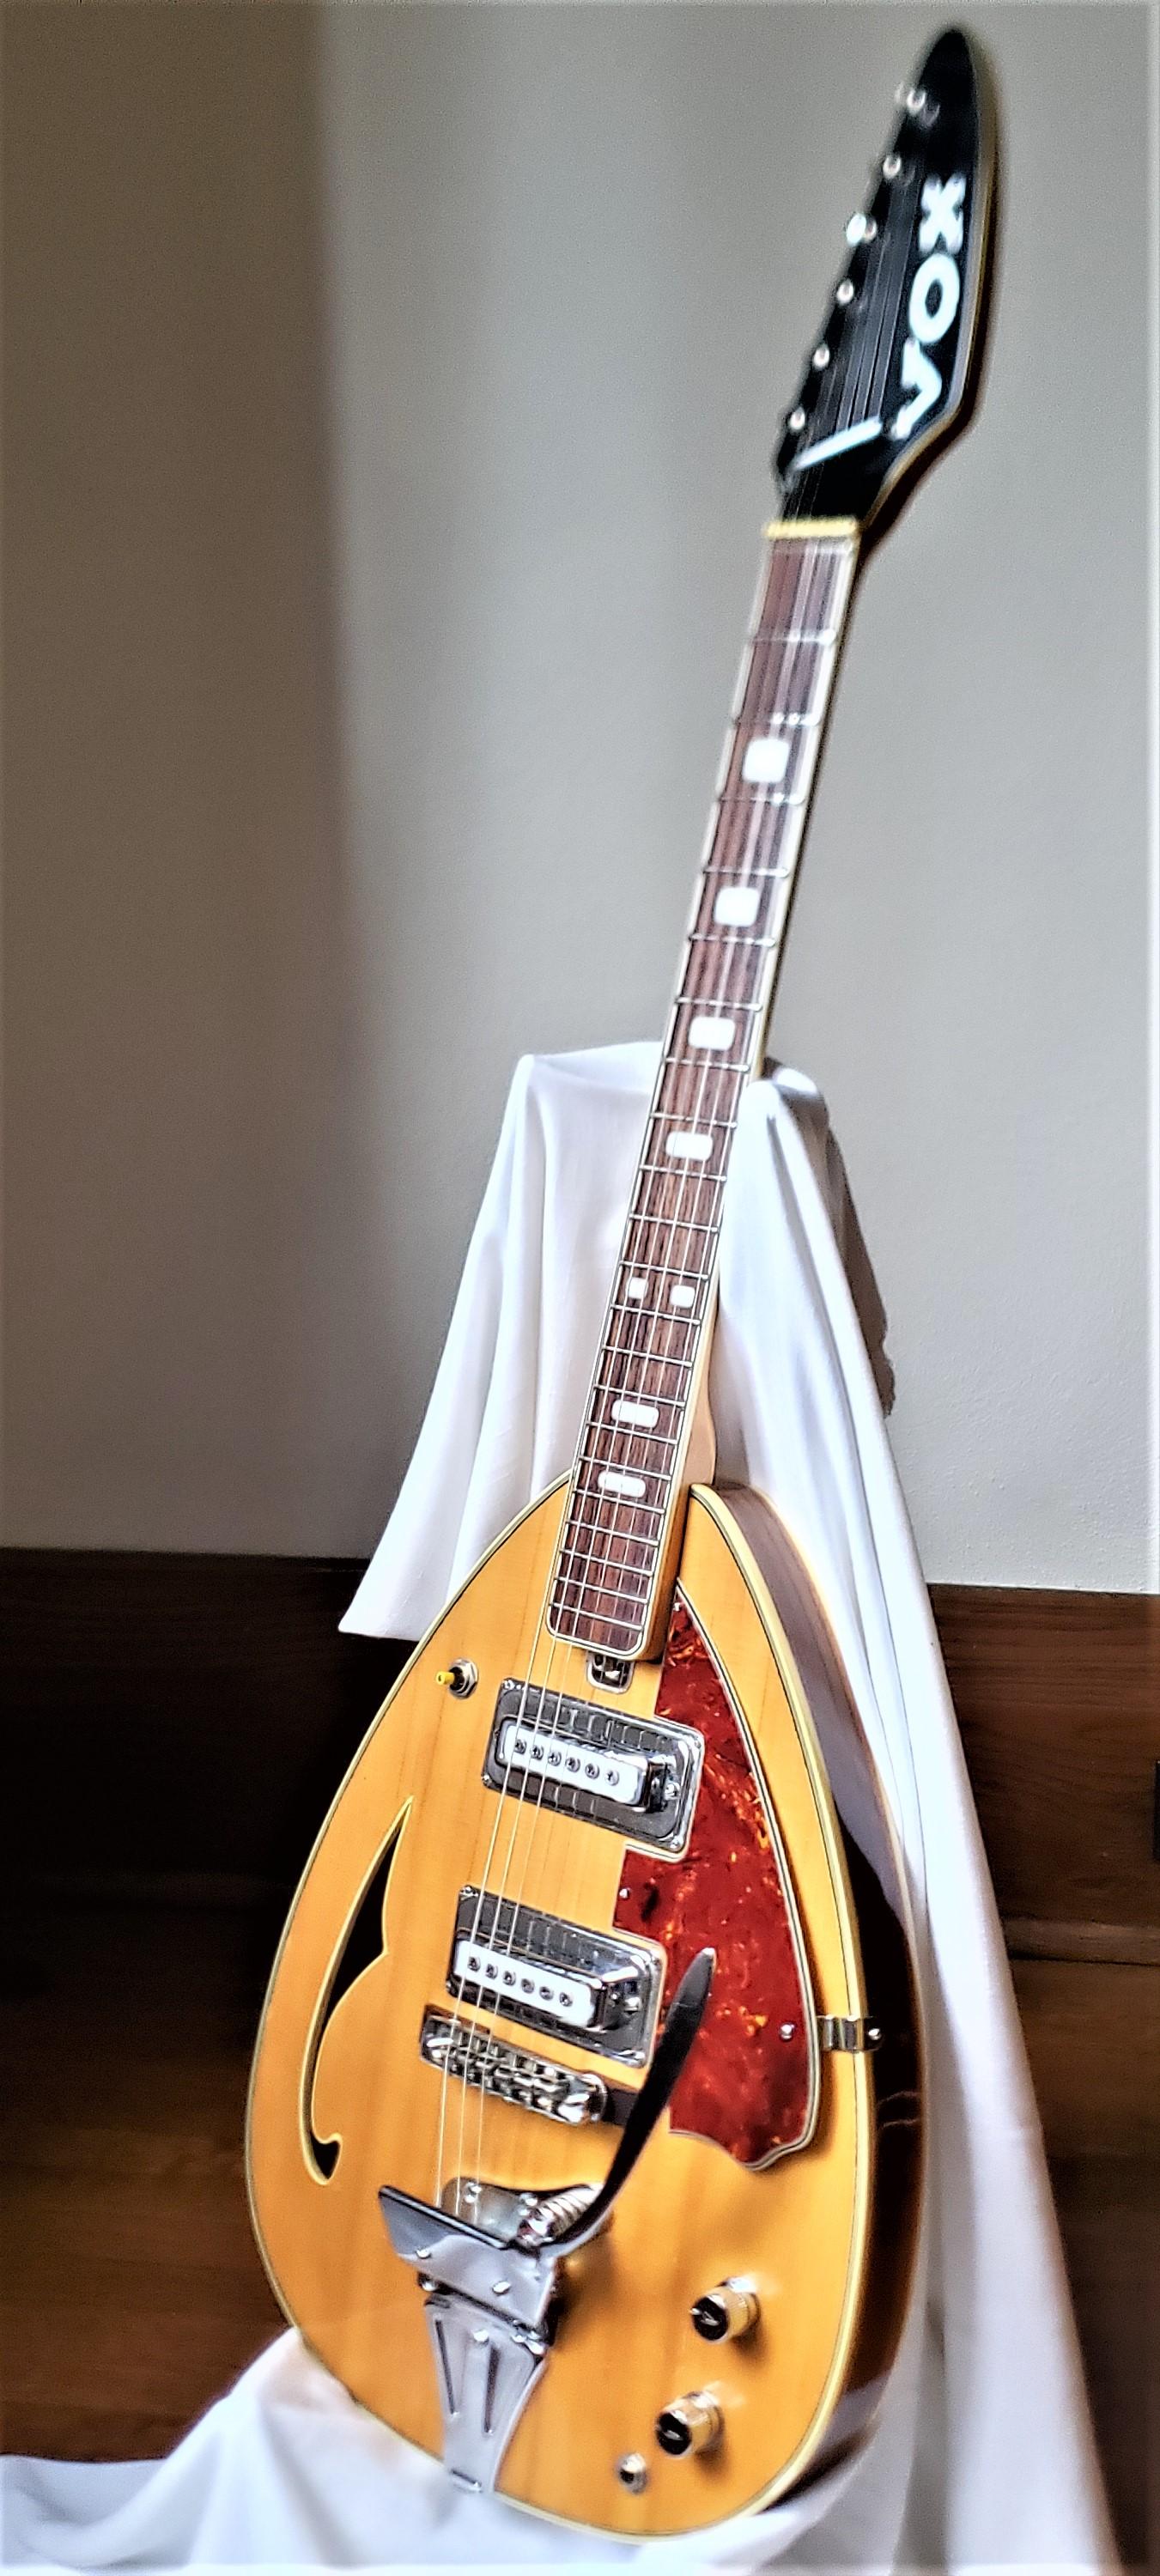 Cette guitare semi creuse en forme de goutte d'eau de l'ère du milieu du siècle a été fabriquée par EKO en Italie pour VOX en 1967 environ, dans le style de l'époque. Le modèle n'est indiqué nulle part sur la guitare, mais nous pensons qu'il s'agit